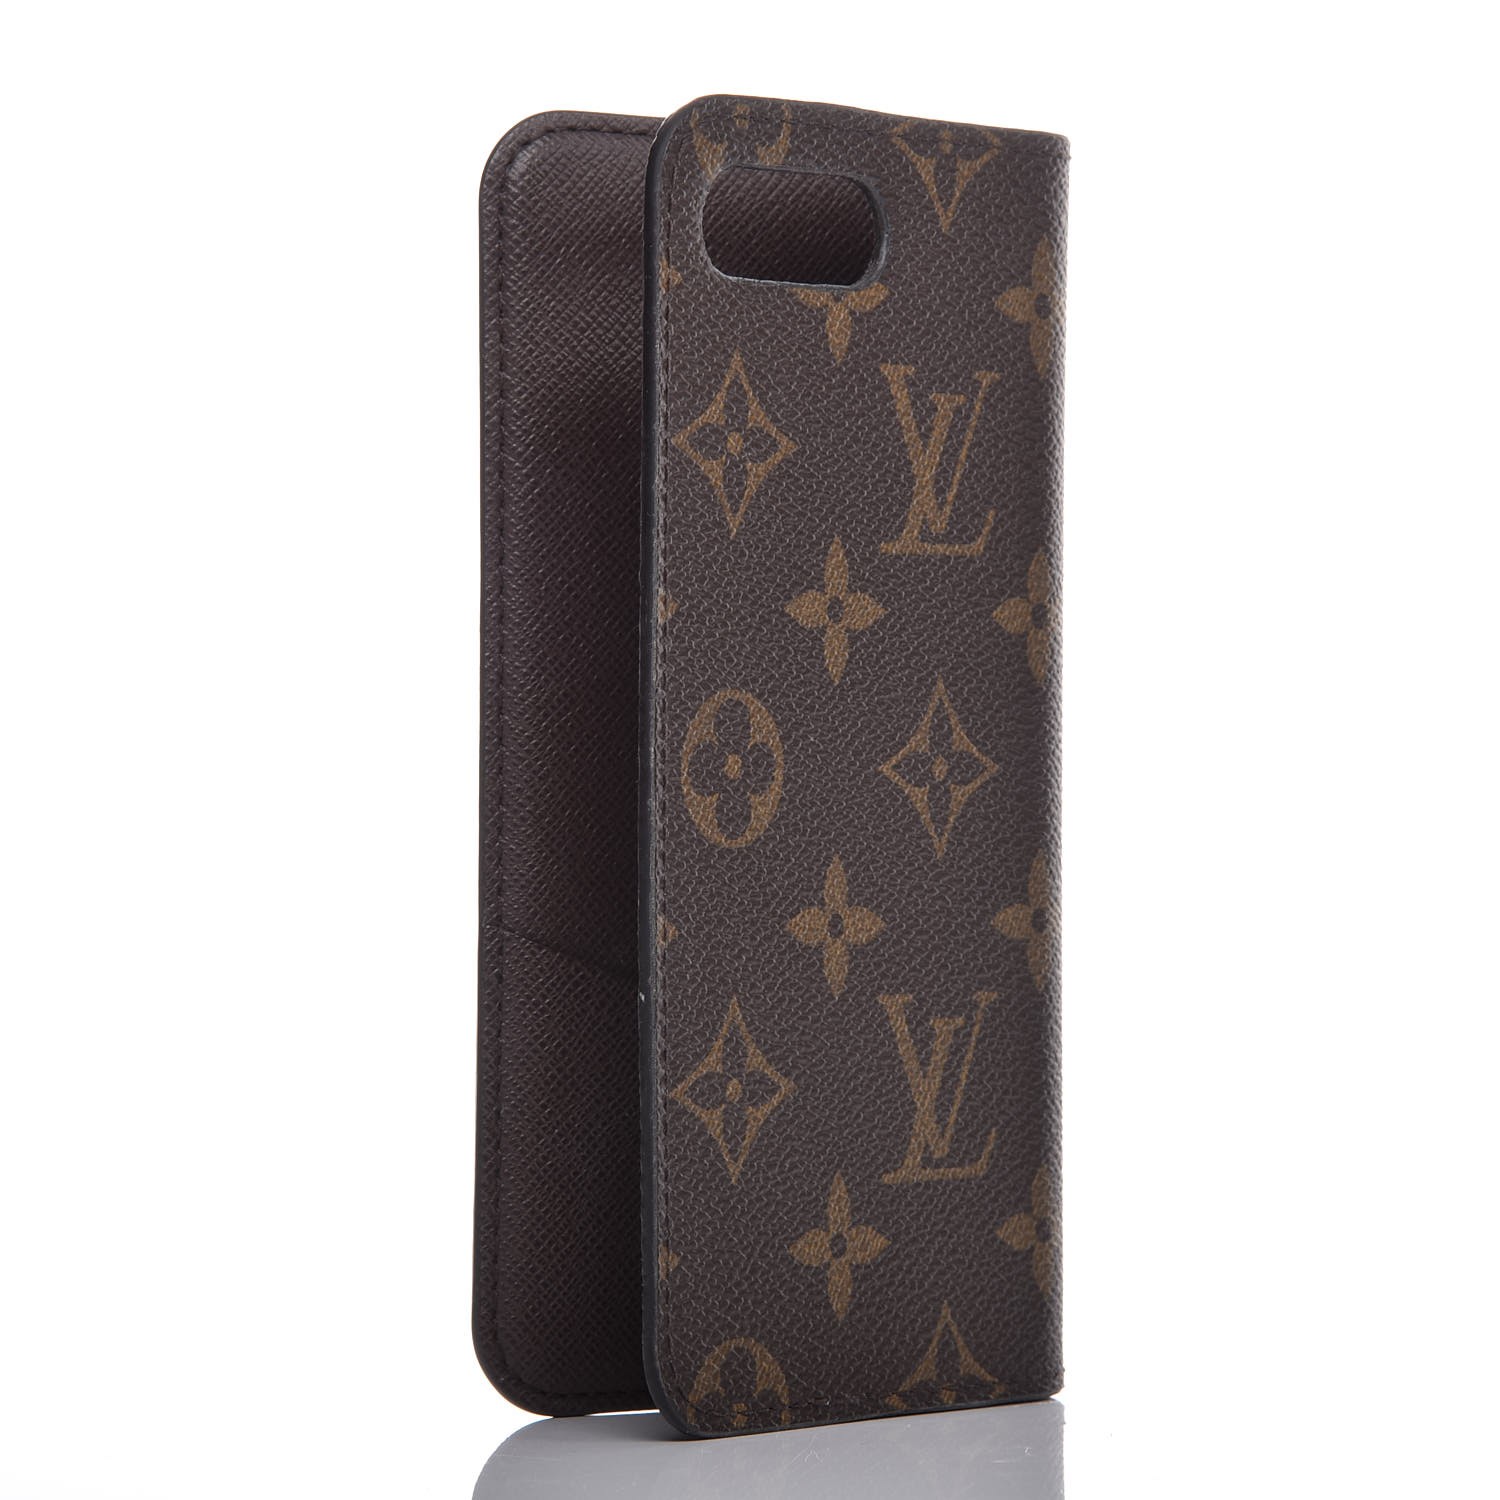 Authentic Louis Vuitton LV Monogram Folio iPhone 8+ Plus Brown Pink Phone  Case